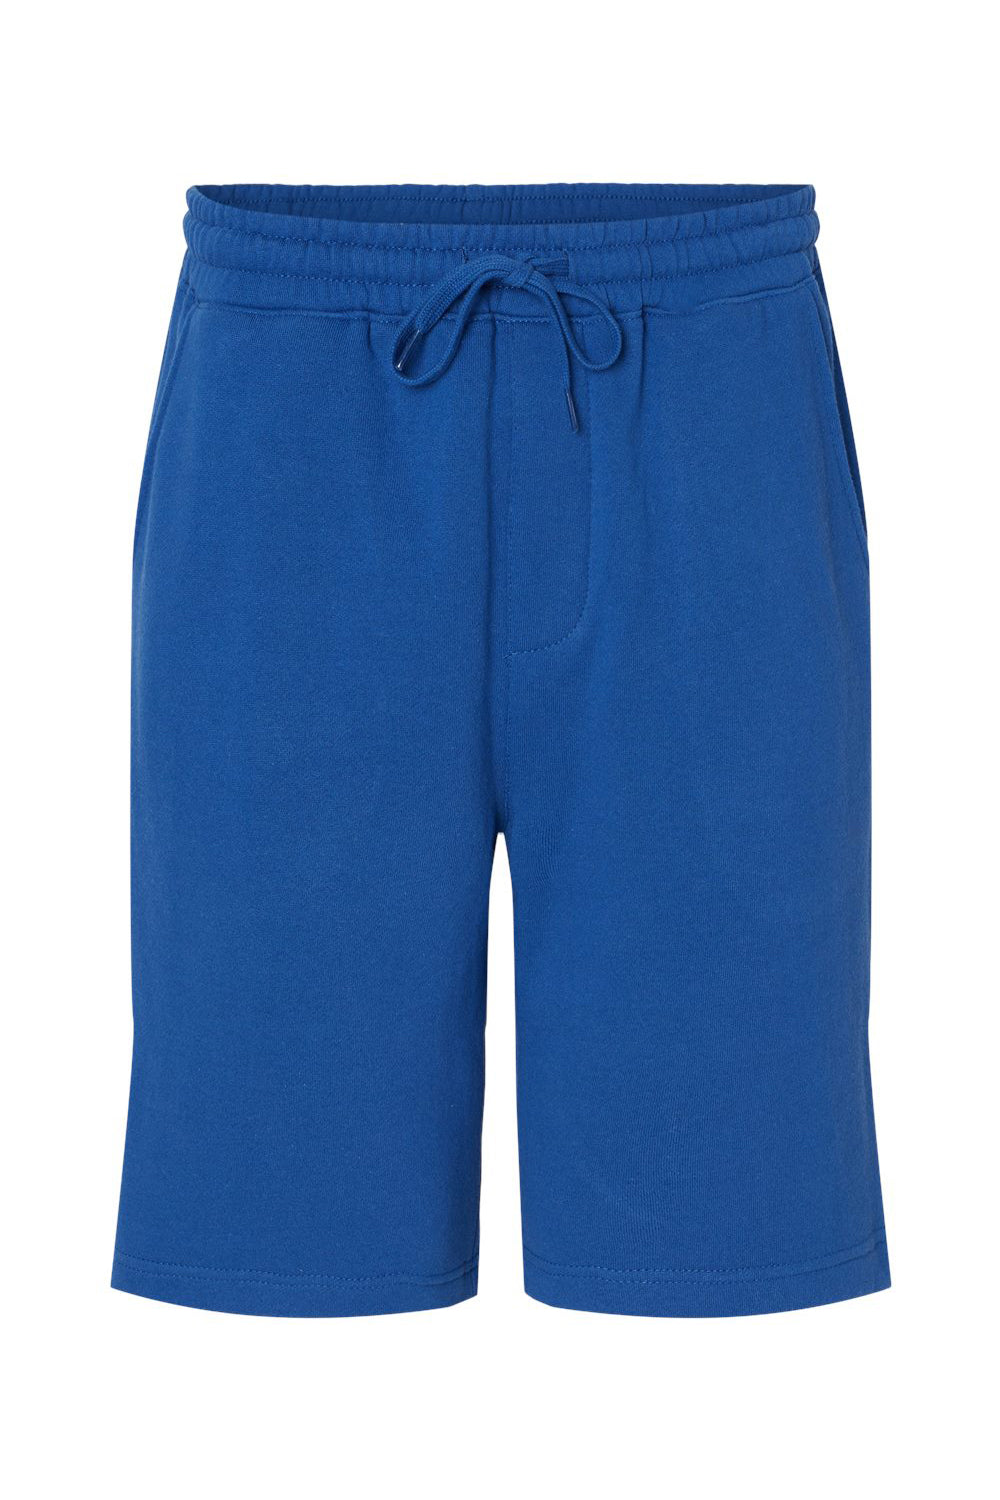 Independent Trading Co. IND20SRT Mens Fleece Shorts w/ Pockets Royal Blue Flat Front